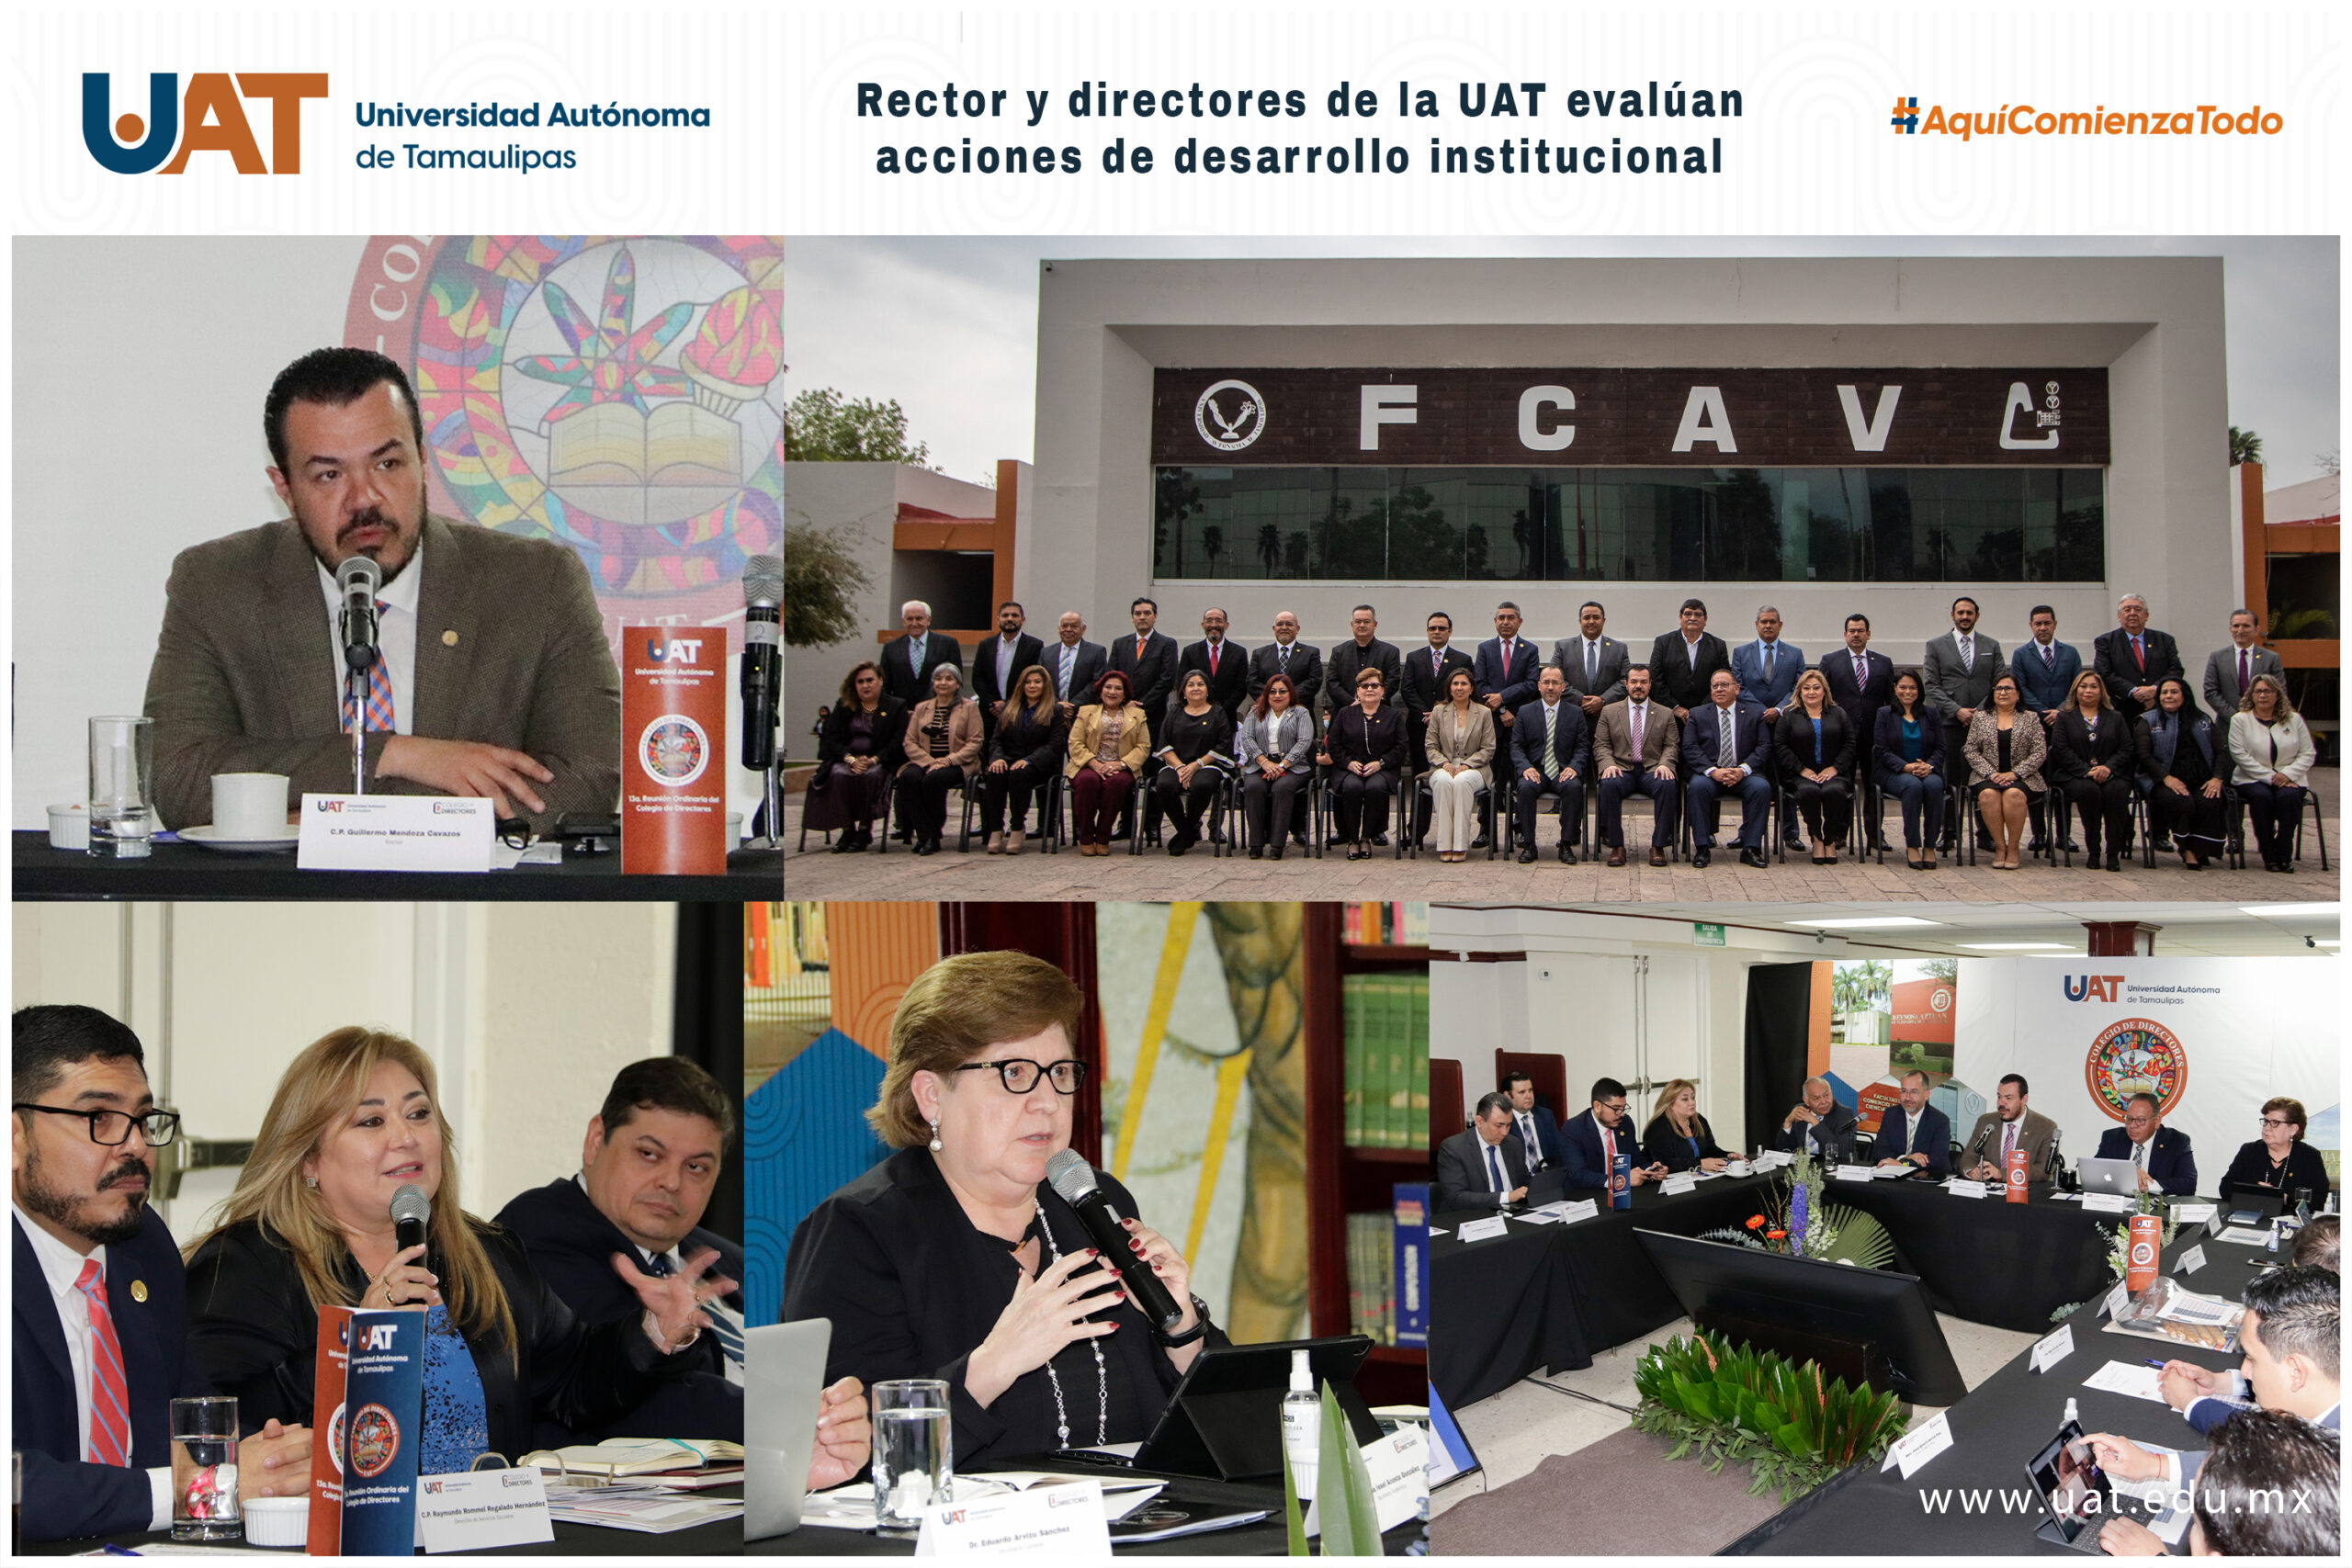 Rector y directores de la UAT evalúan acciones de desarrollo institucional